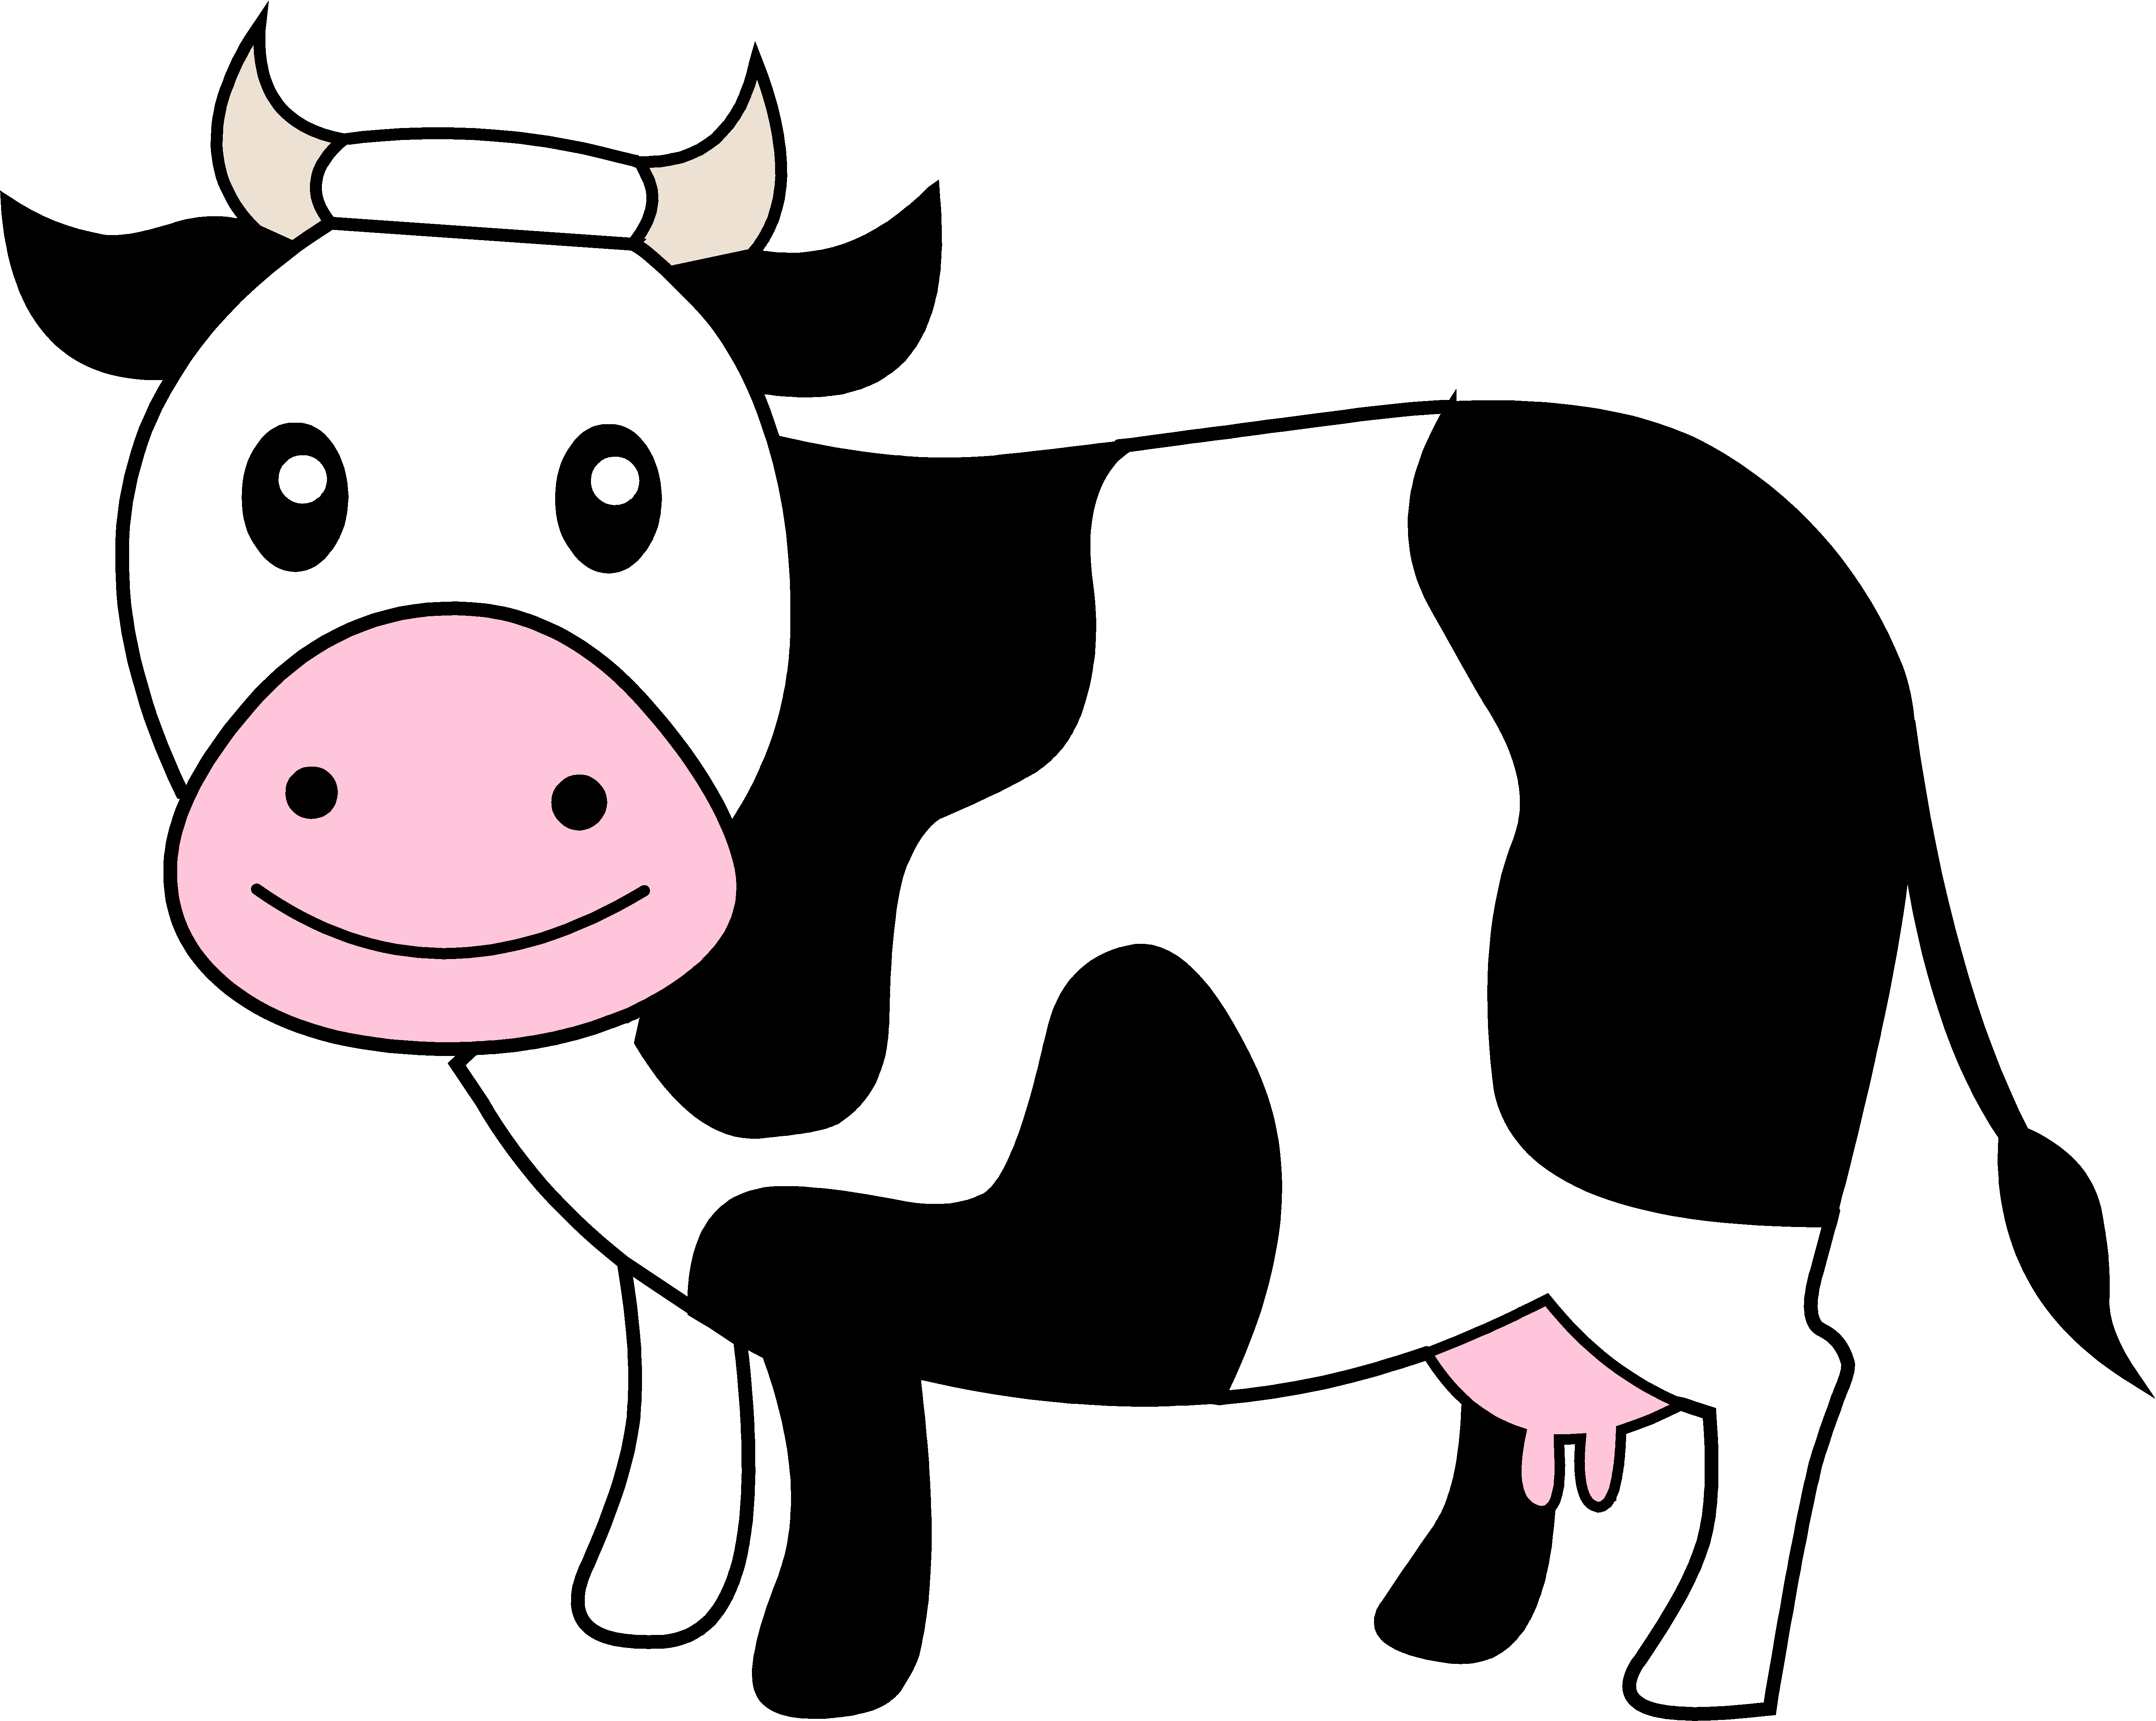 cow logos clip art - photo #23